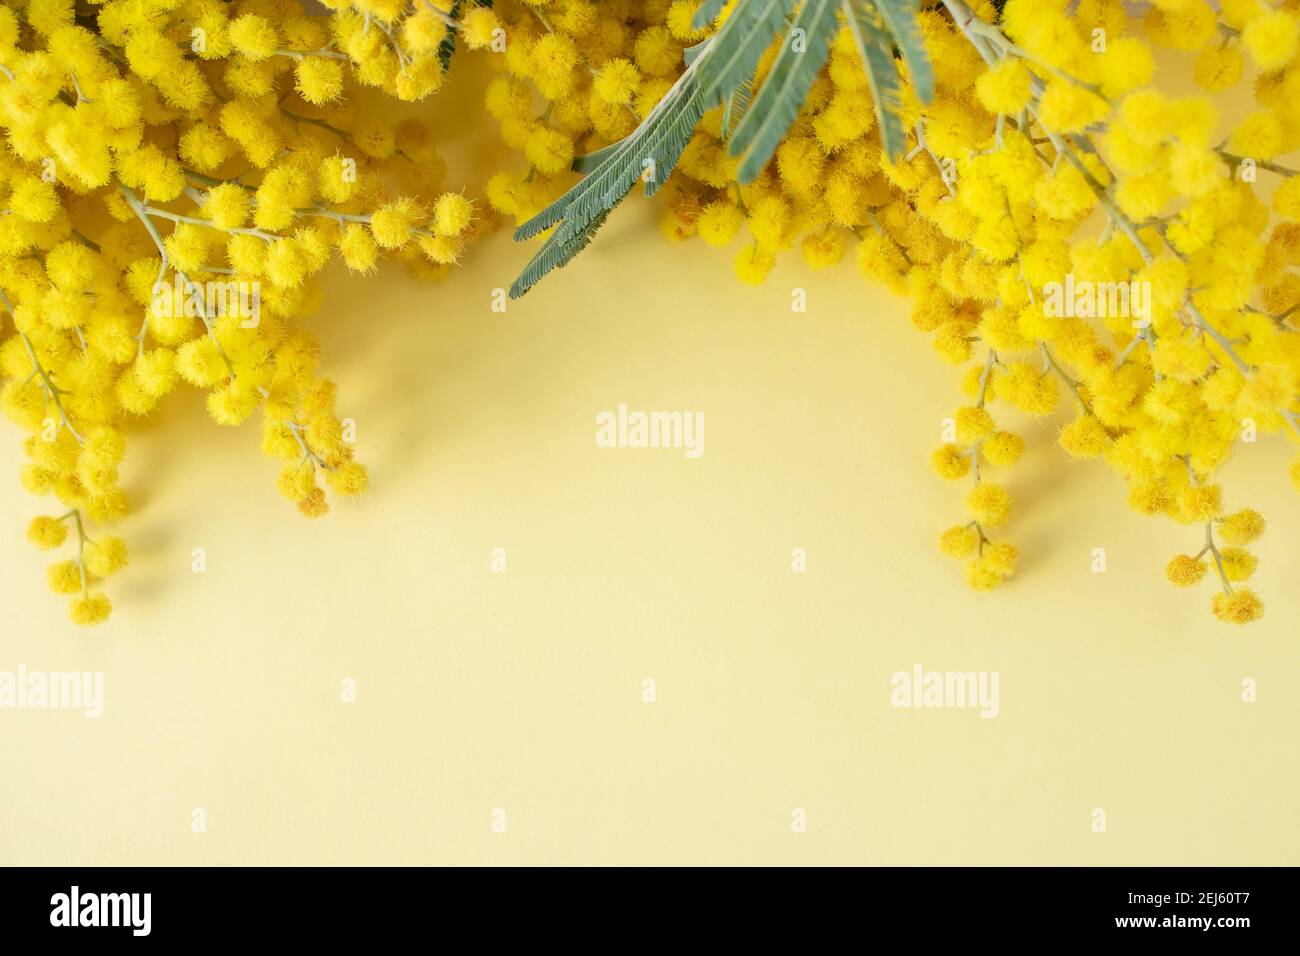 Mimosa oder Silber wattle gelben Frühlingsblumen auf dem gelben Hintergrund Stockfoto